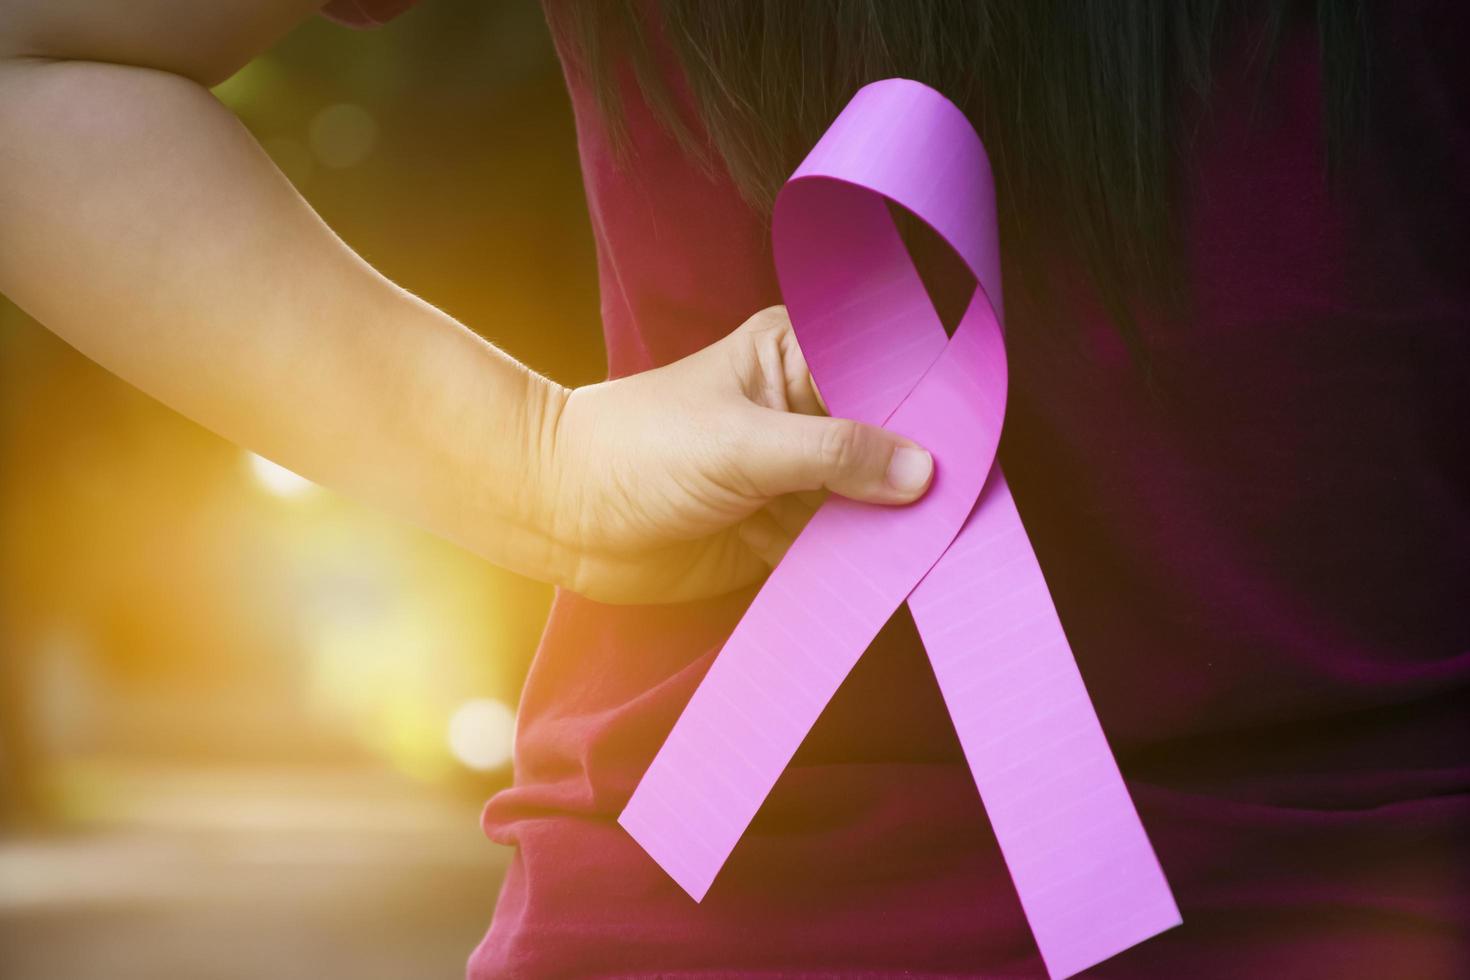 cinta de papel rosa en manos de una adolescente para mostrar y llamar a todas las personas del mundo a apoyar y asistir a la campaña de cáncer de mama de la mujer, enfoque suave y selectivo. foto